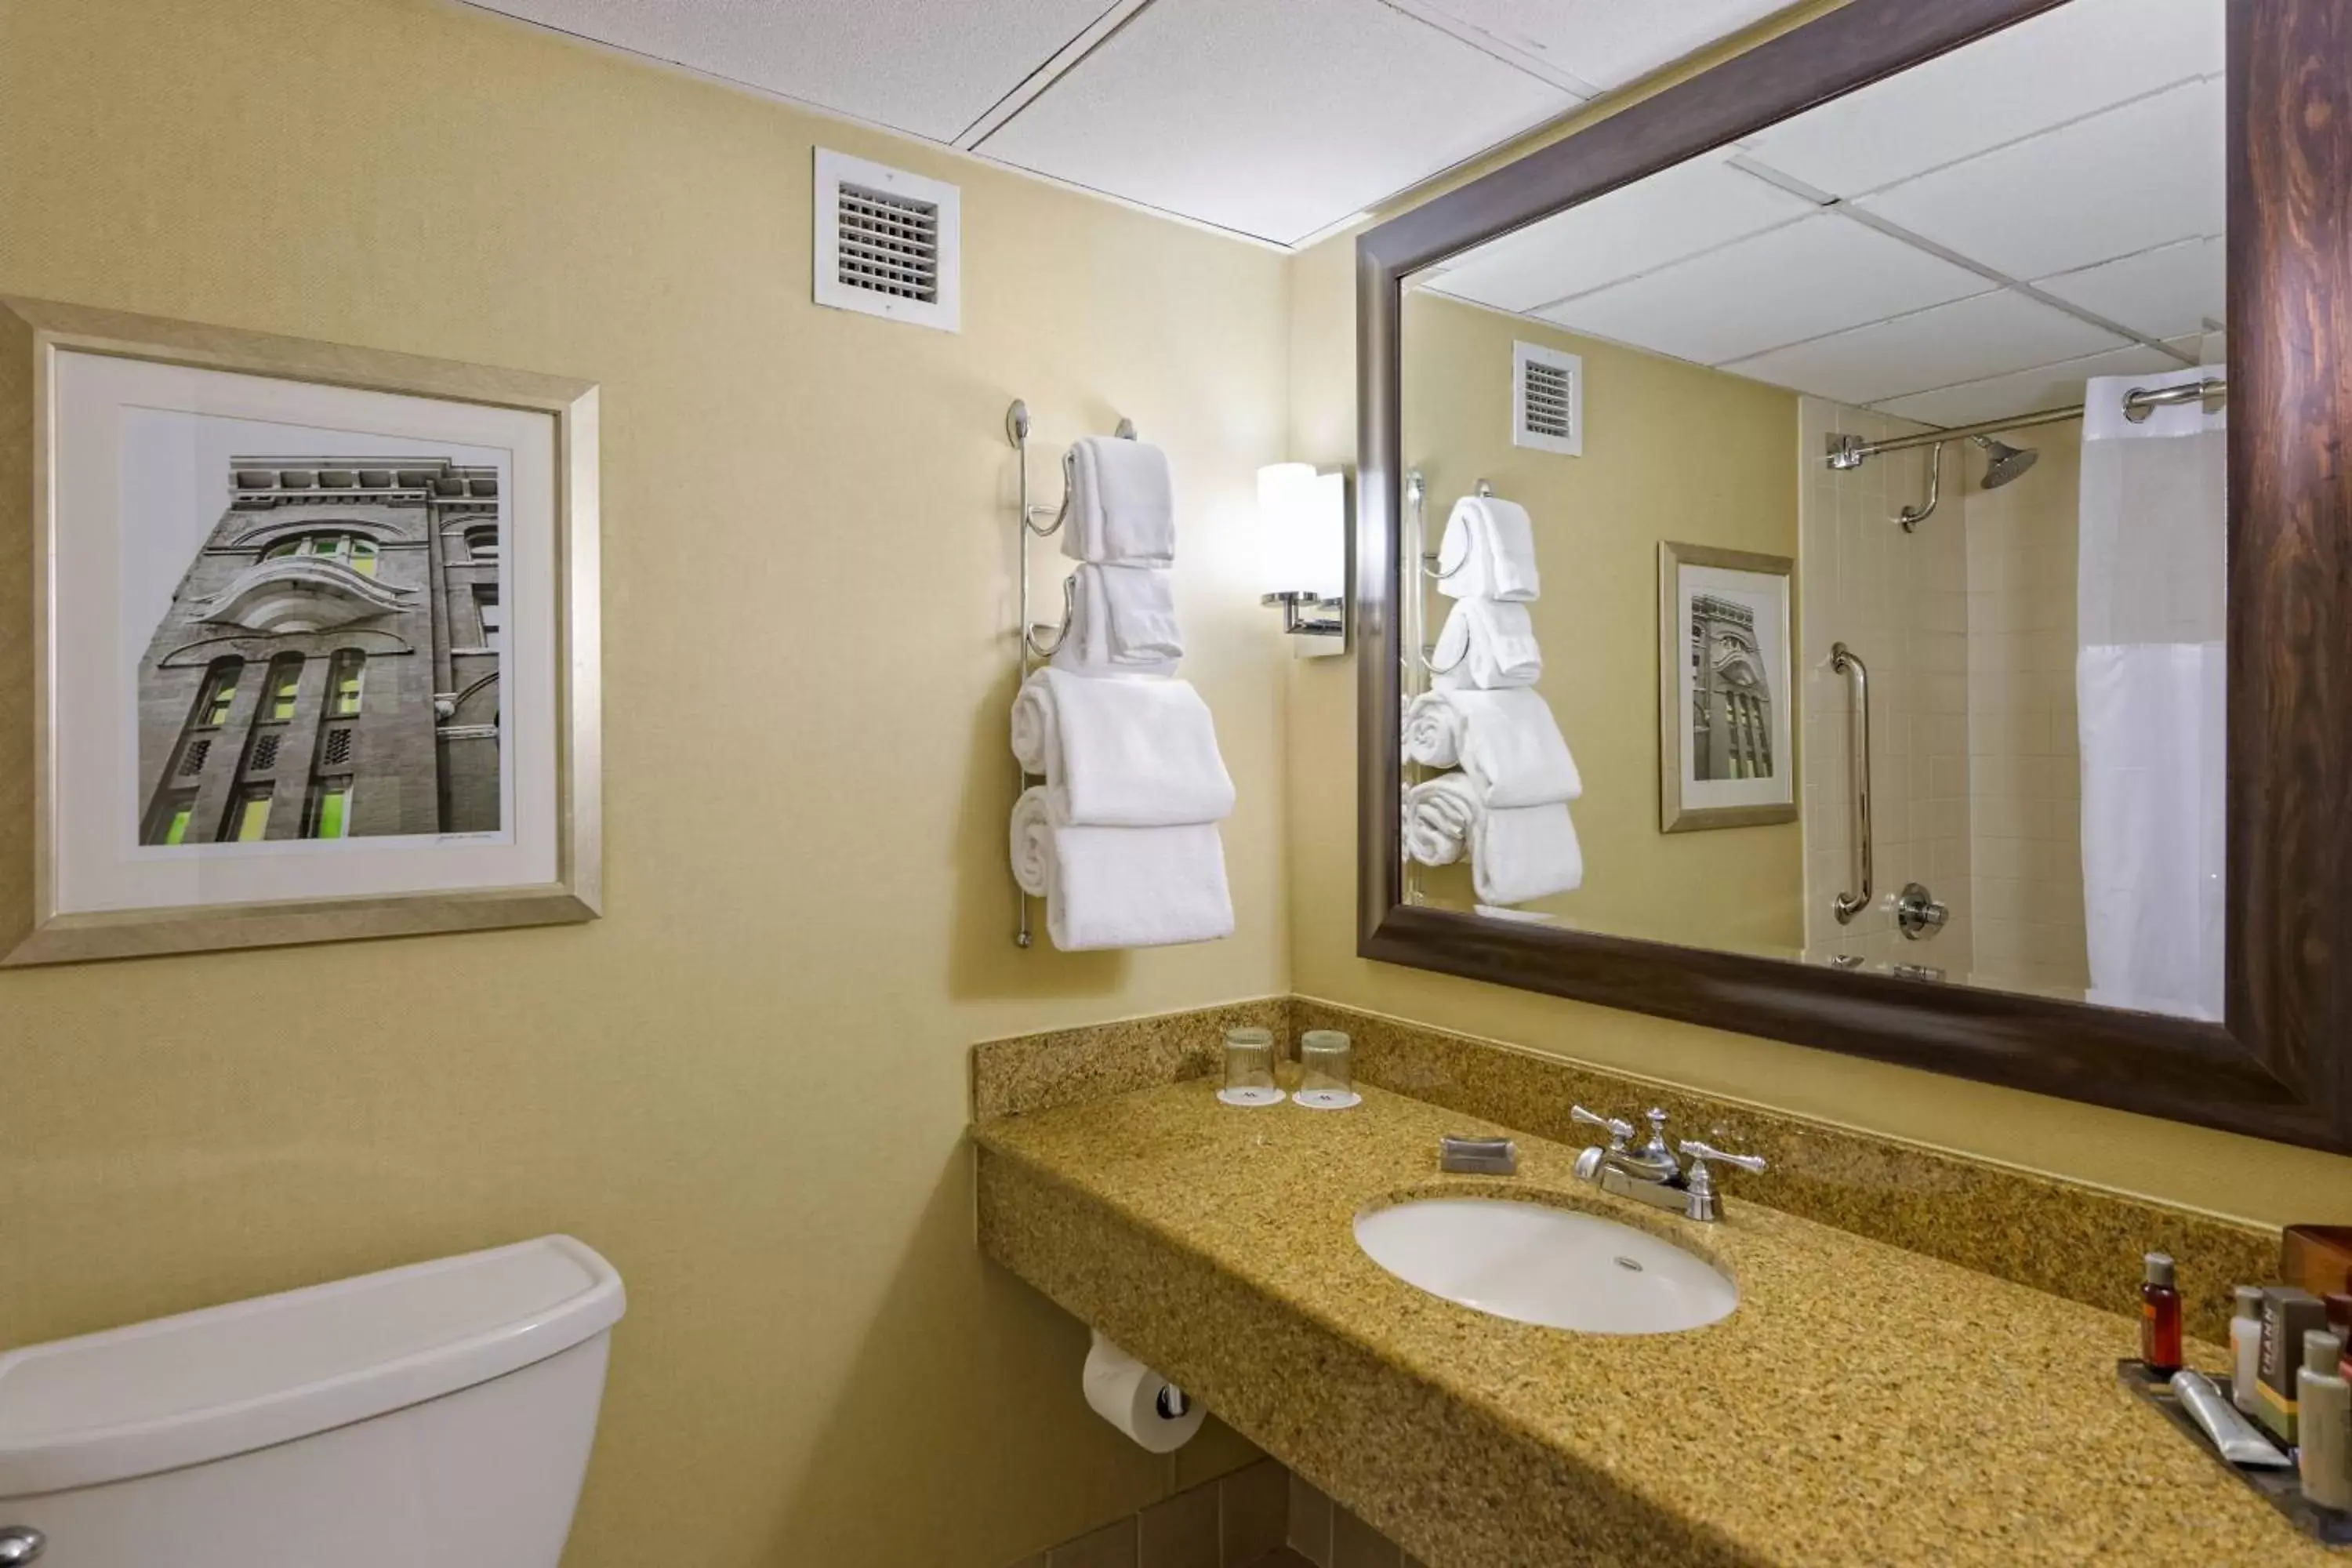 Bathroom in Houston Marriott West Loop by The Galleria